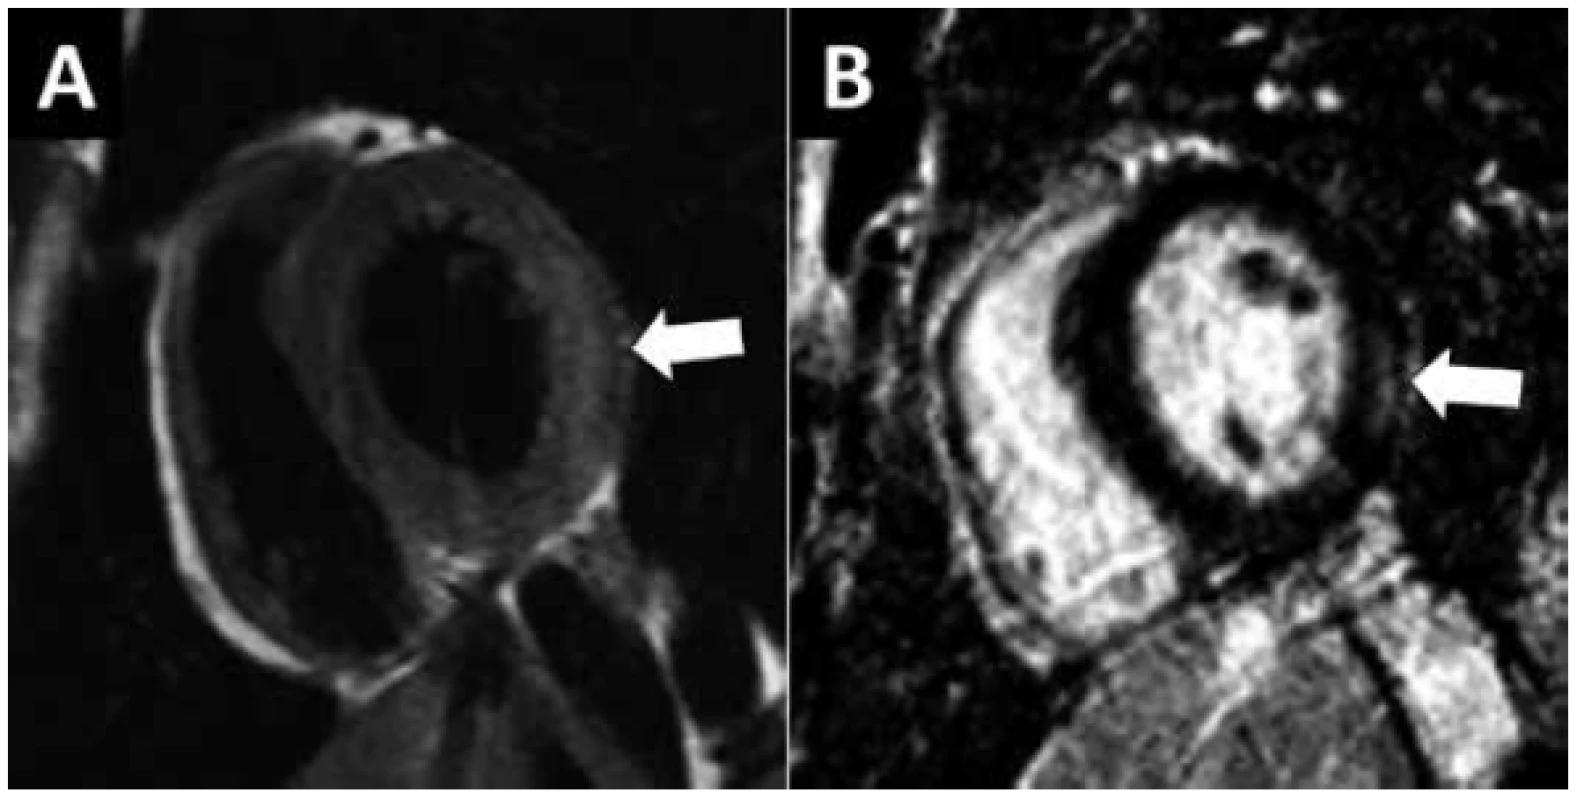 MR vyšetření myokarditidy. 17 letý pacient s klinickým podezřením
na akutní myokarditidu (EKG změny, systolická dysfunkce LK, vysoce pozitivní
troponin I, normální koronarogram). A) V T2-váženém obrazu je patrný
edém laterální stěny levé komory (šipka). B) Zobrazení pozdního nasycení
gadoliniem. Pruhovité ložisko pozdního nasycení v zevní vrstvě myokardu
(subepikardiálně) odpovídající nekróze.